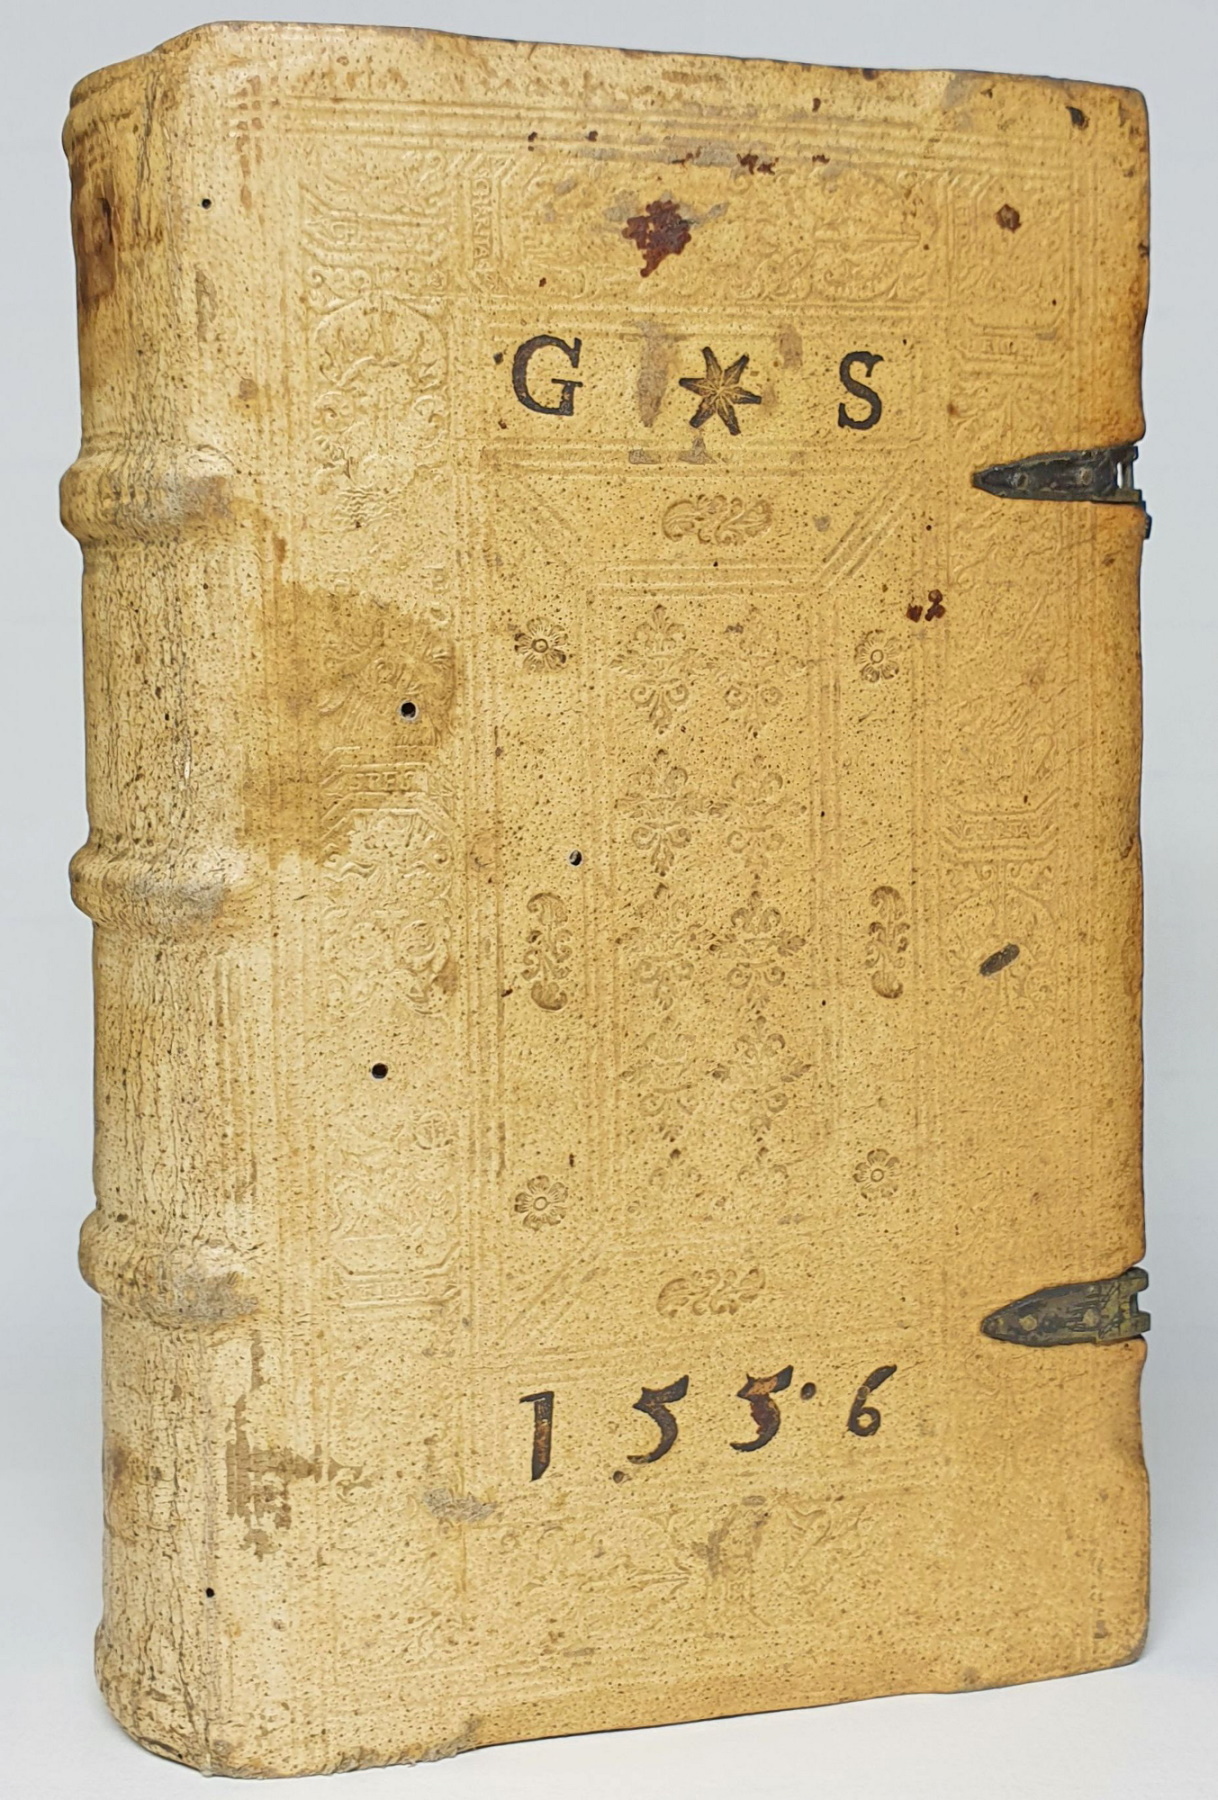 Einband mit Supralibros „G S“ und Jahreszahl „1556“